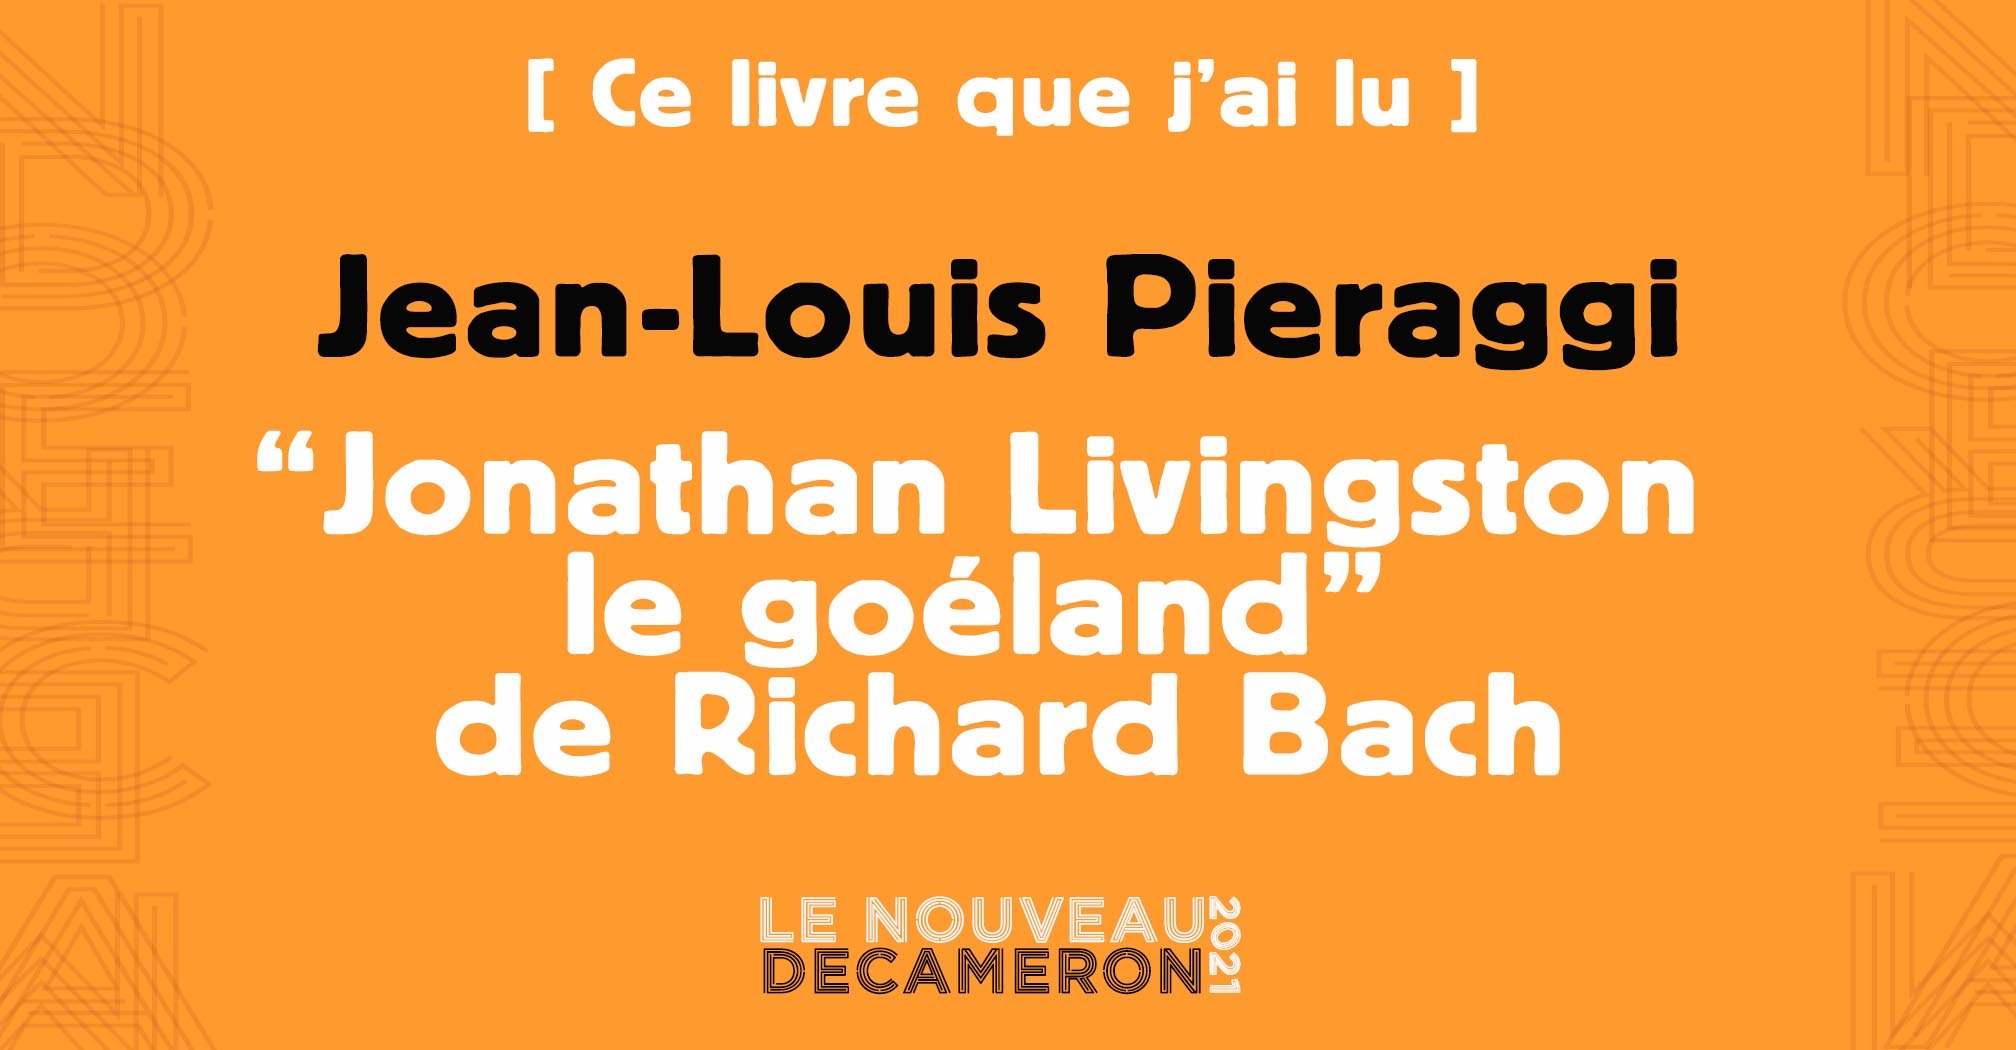  Jean-Louis Pieraggi - "Jonathan Livingston le goéland" de Richard Bach